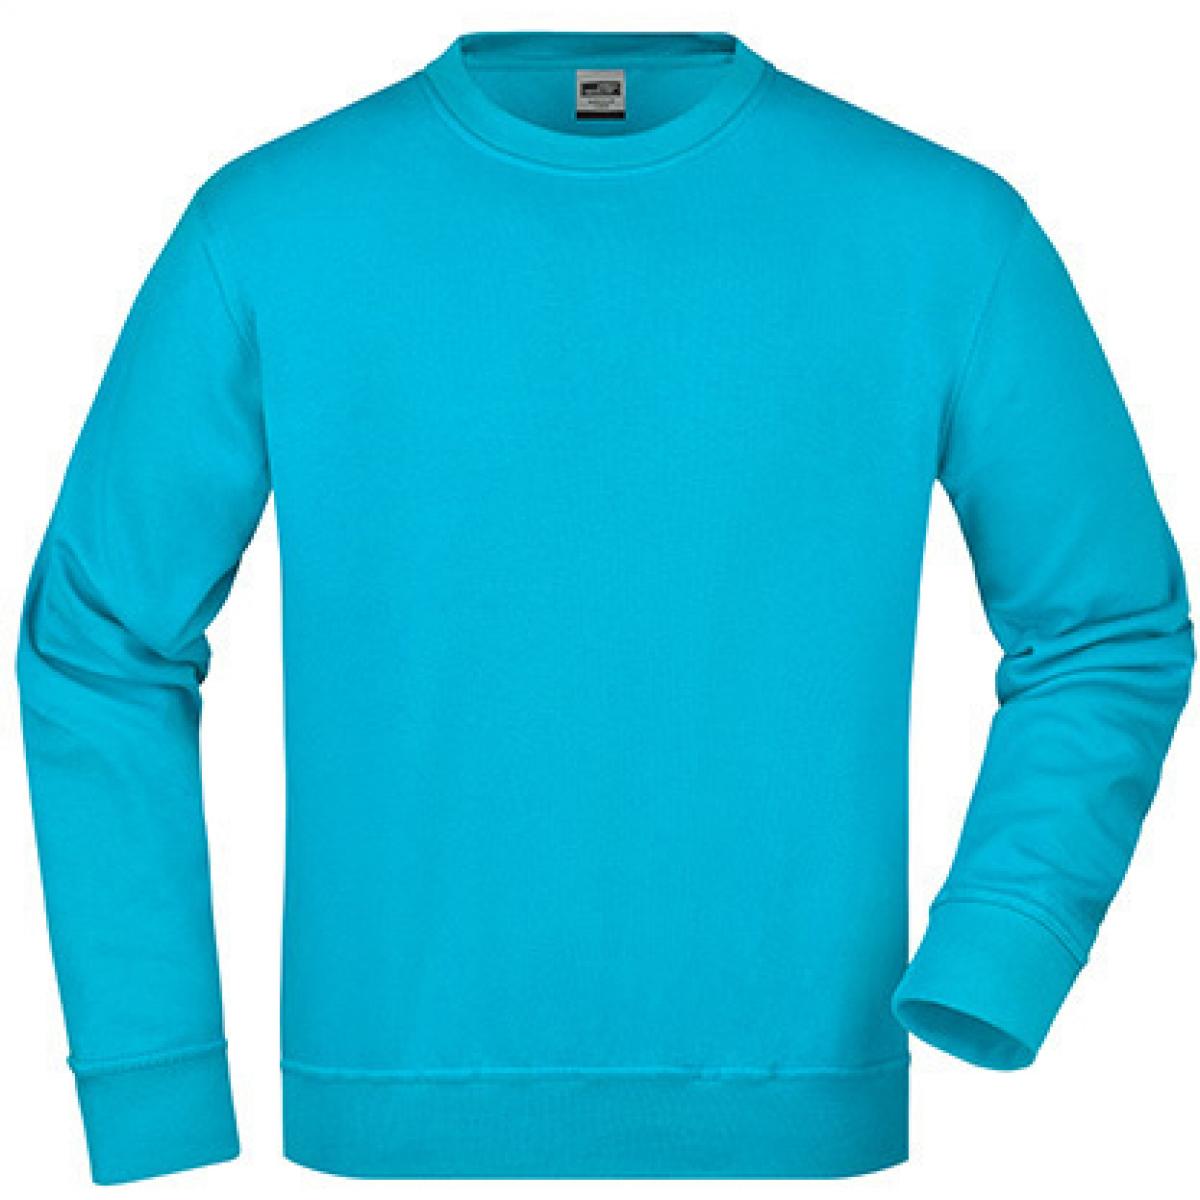 Hersteller: James+Nicholson Herstellernummer: JN840 Artikelbezeichnung: Workwear Sweatshirt / Waschbar bis 60C Farbe: Turquoise